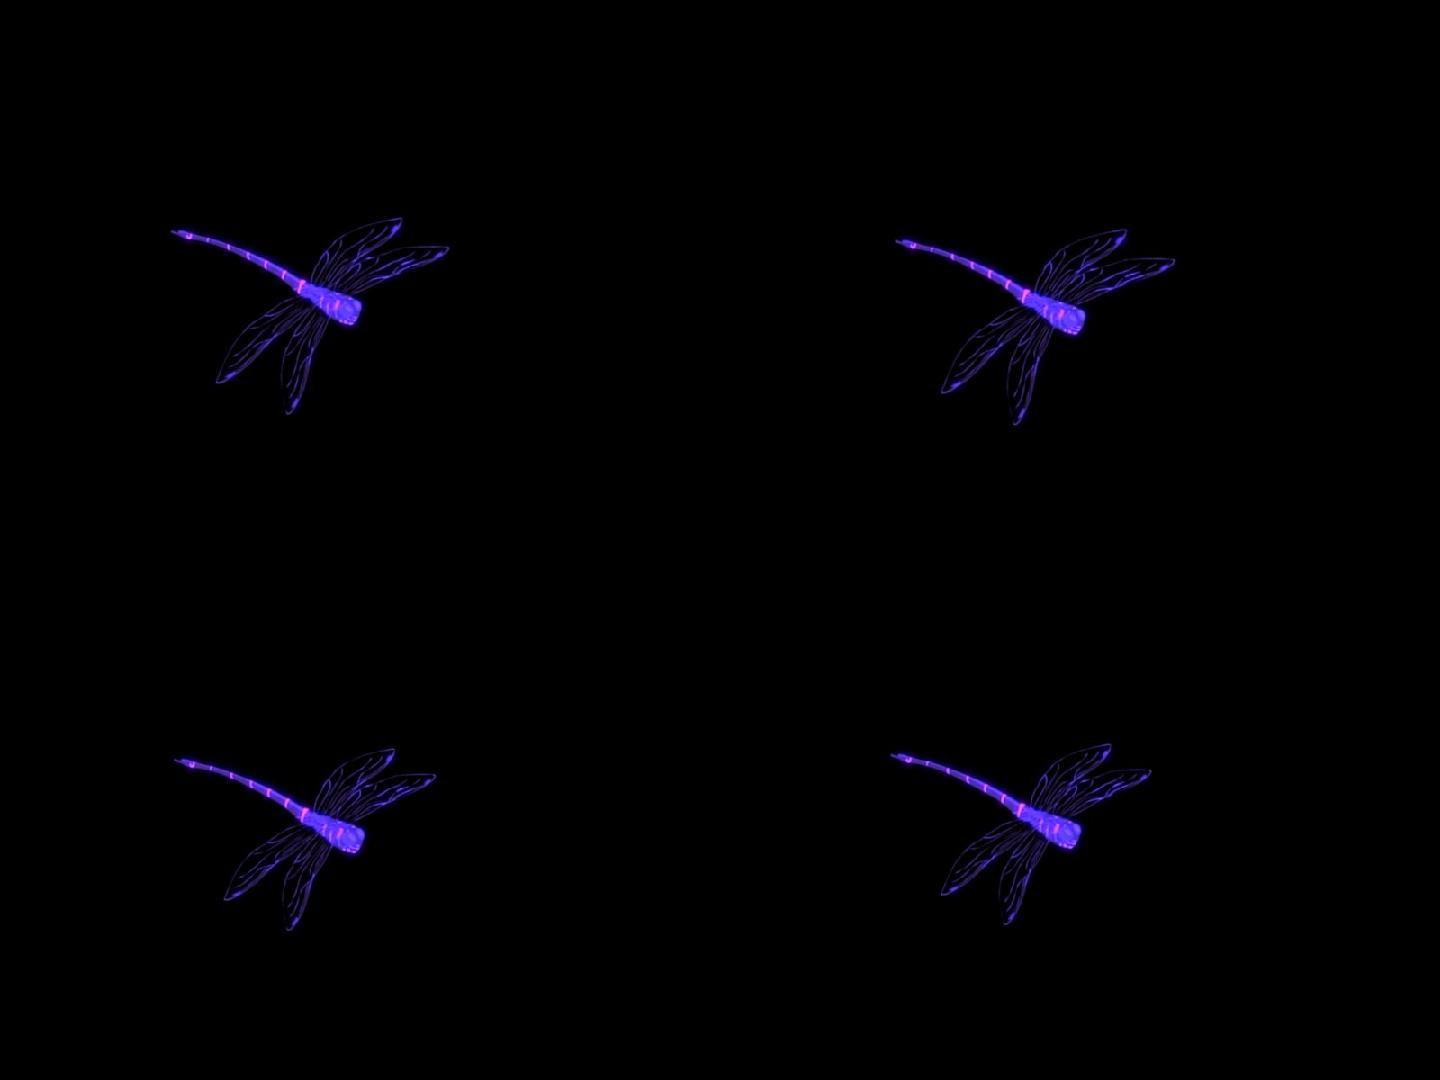 alpha通道单只紫色蜻蜓飞行